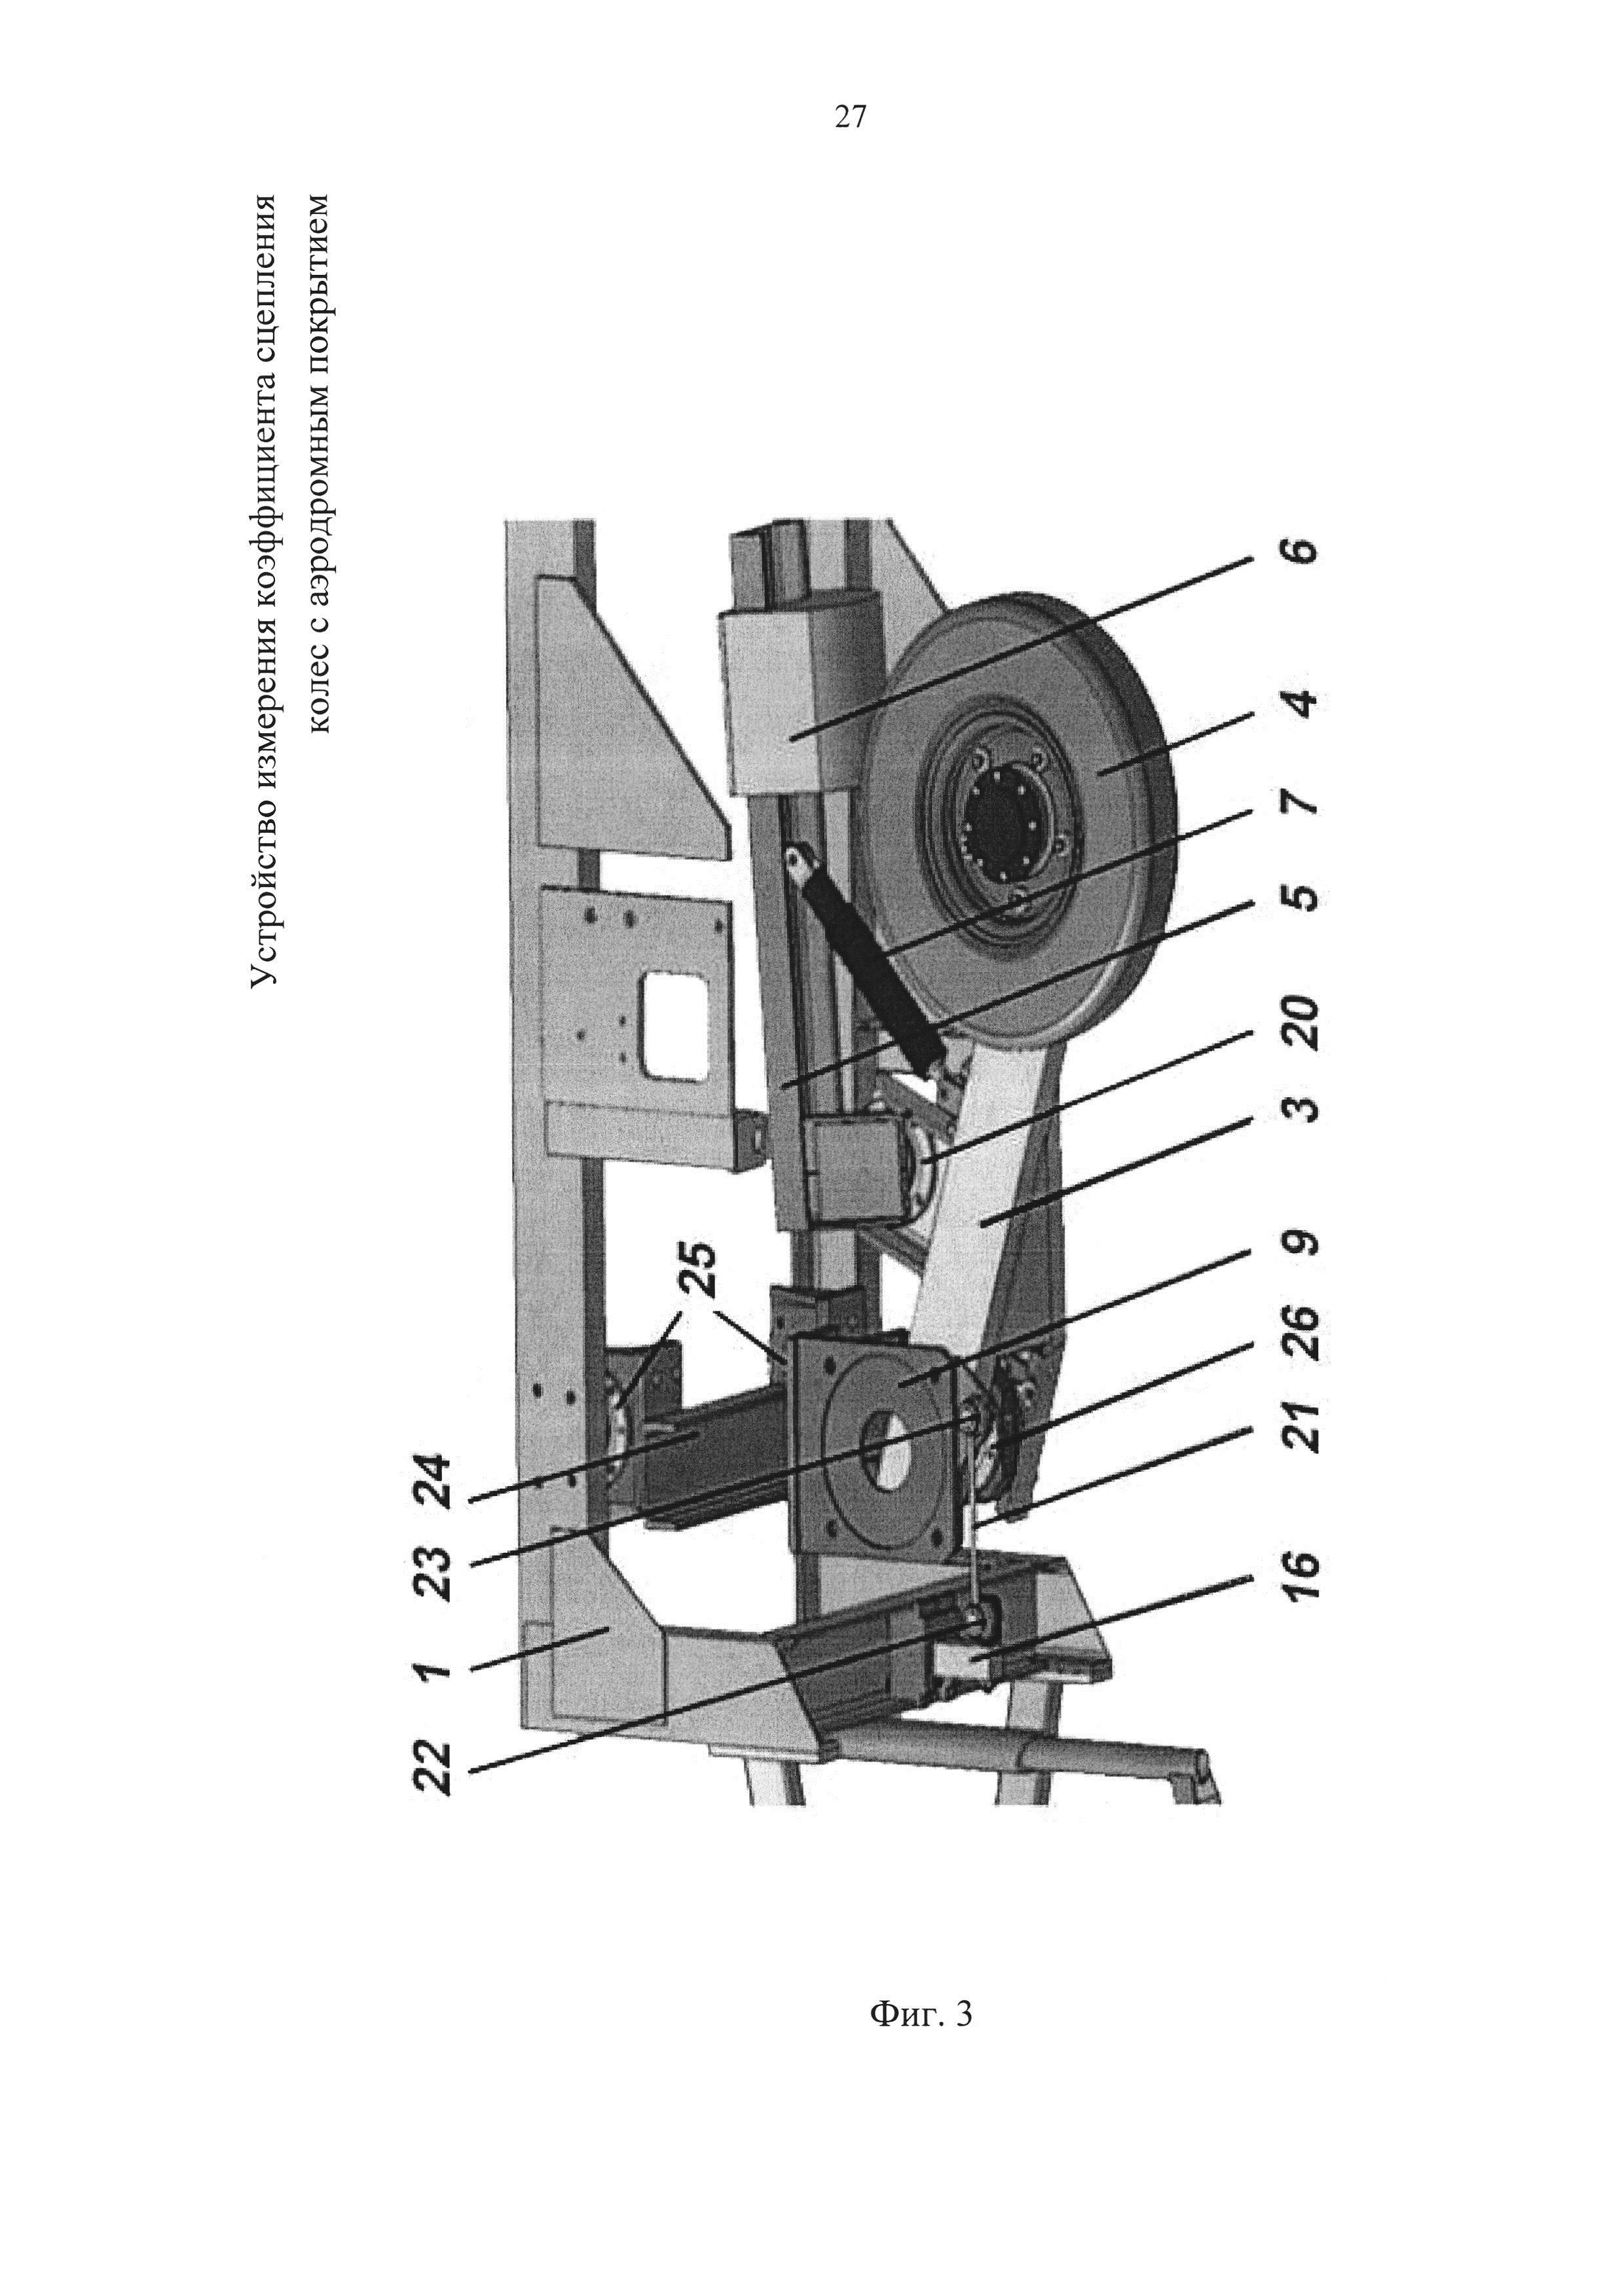 Устройство измерения коэффициента сцепления колес с аэродромным покрытием